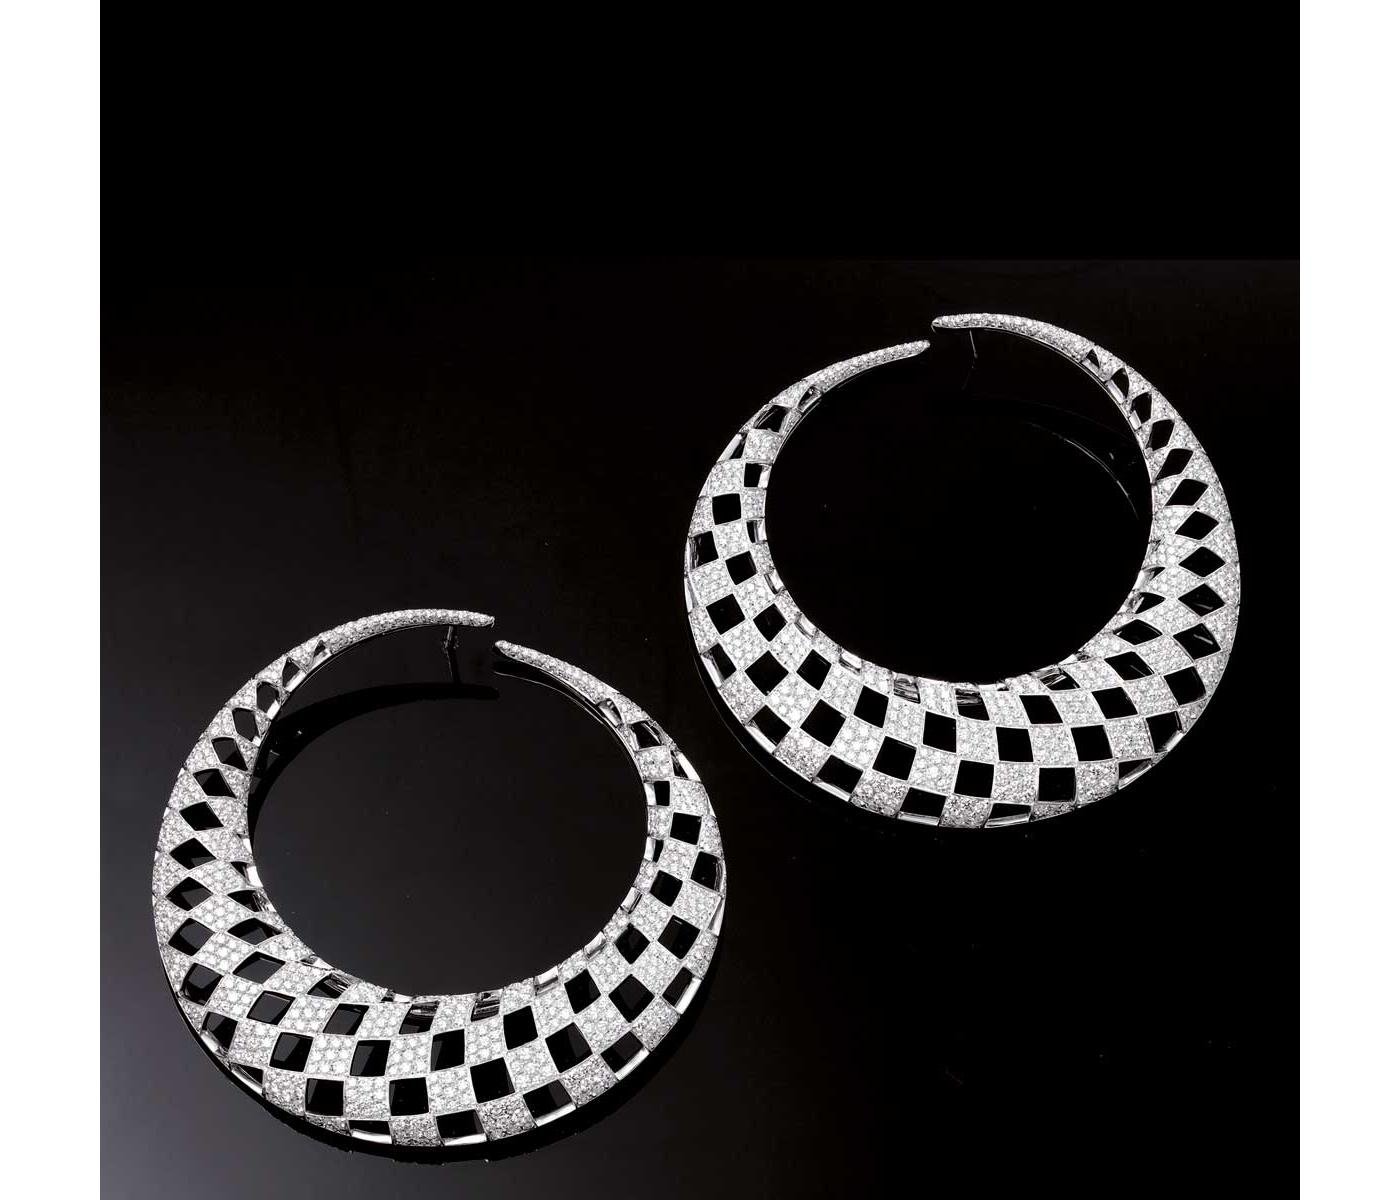 Earrings by Palmiero